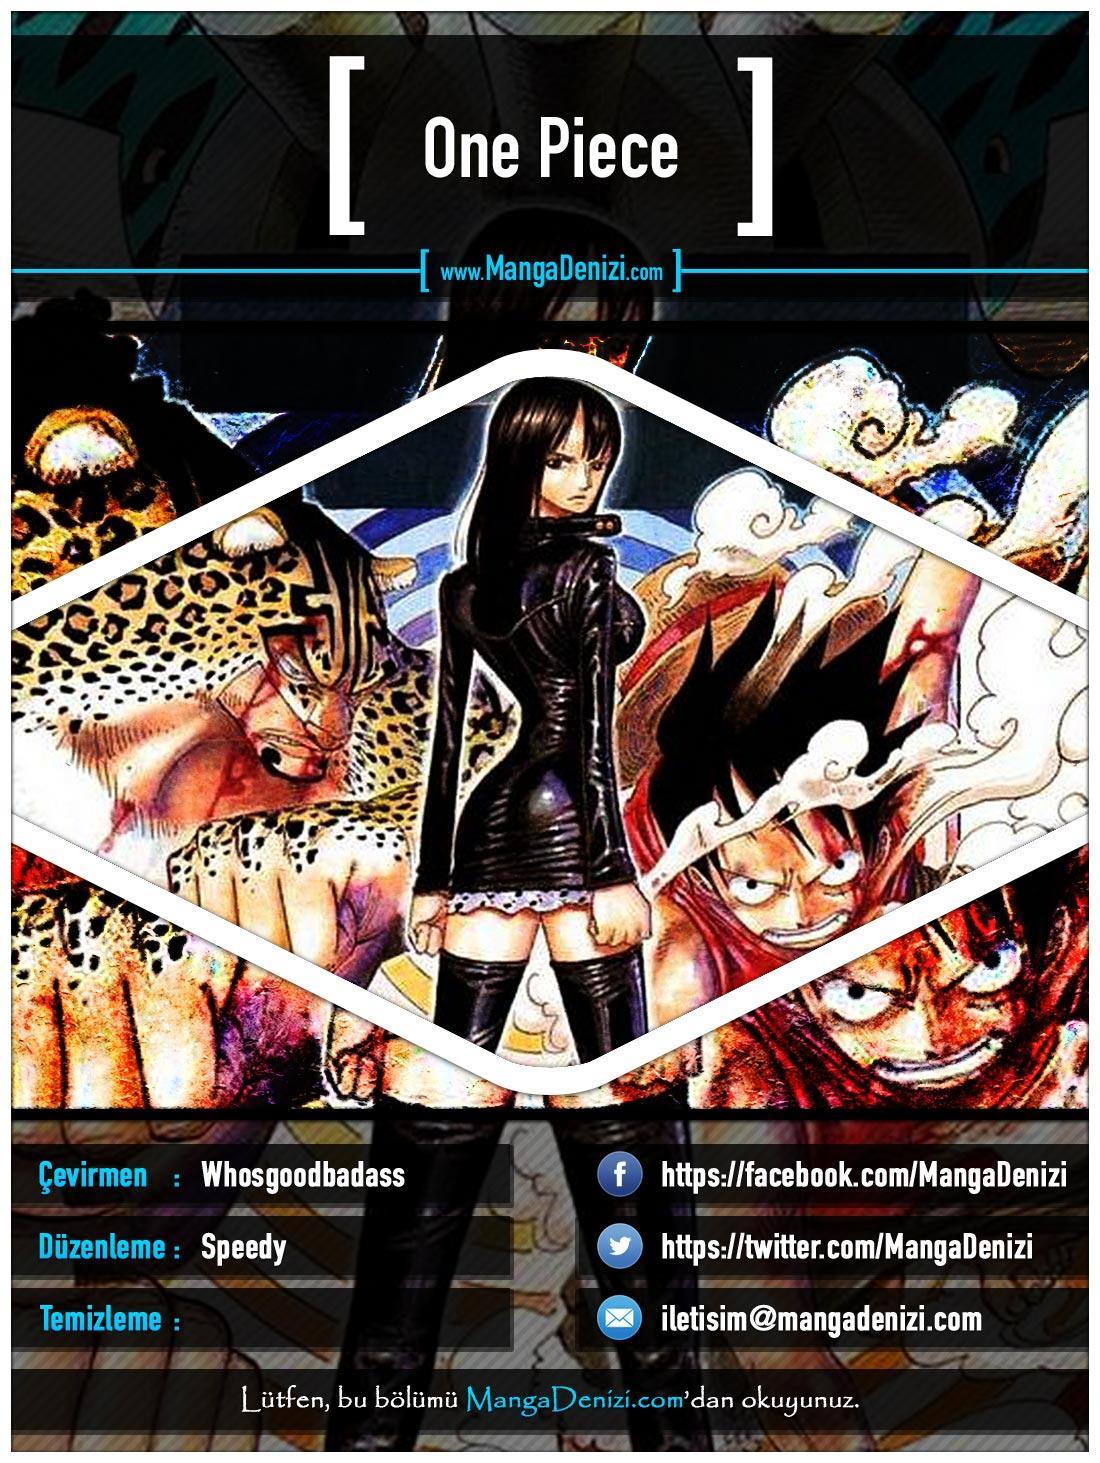 One Piece [Renkli] mangasının 0419 bölümünün 1. sayfasını okuyorsunuz.